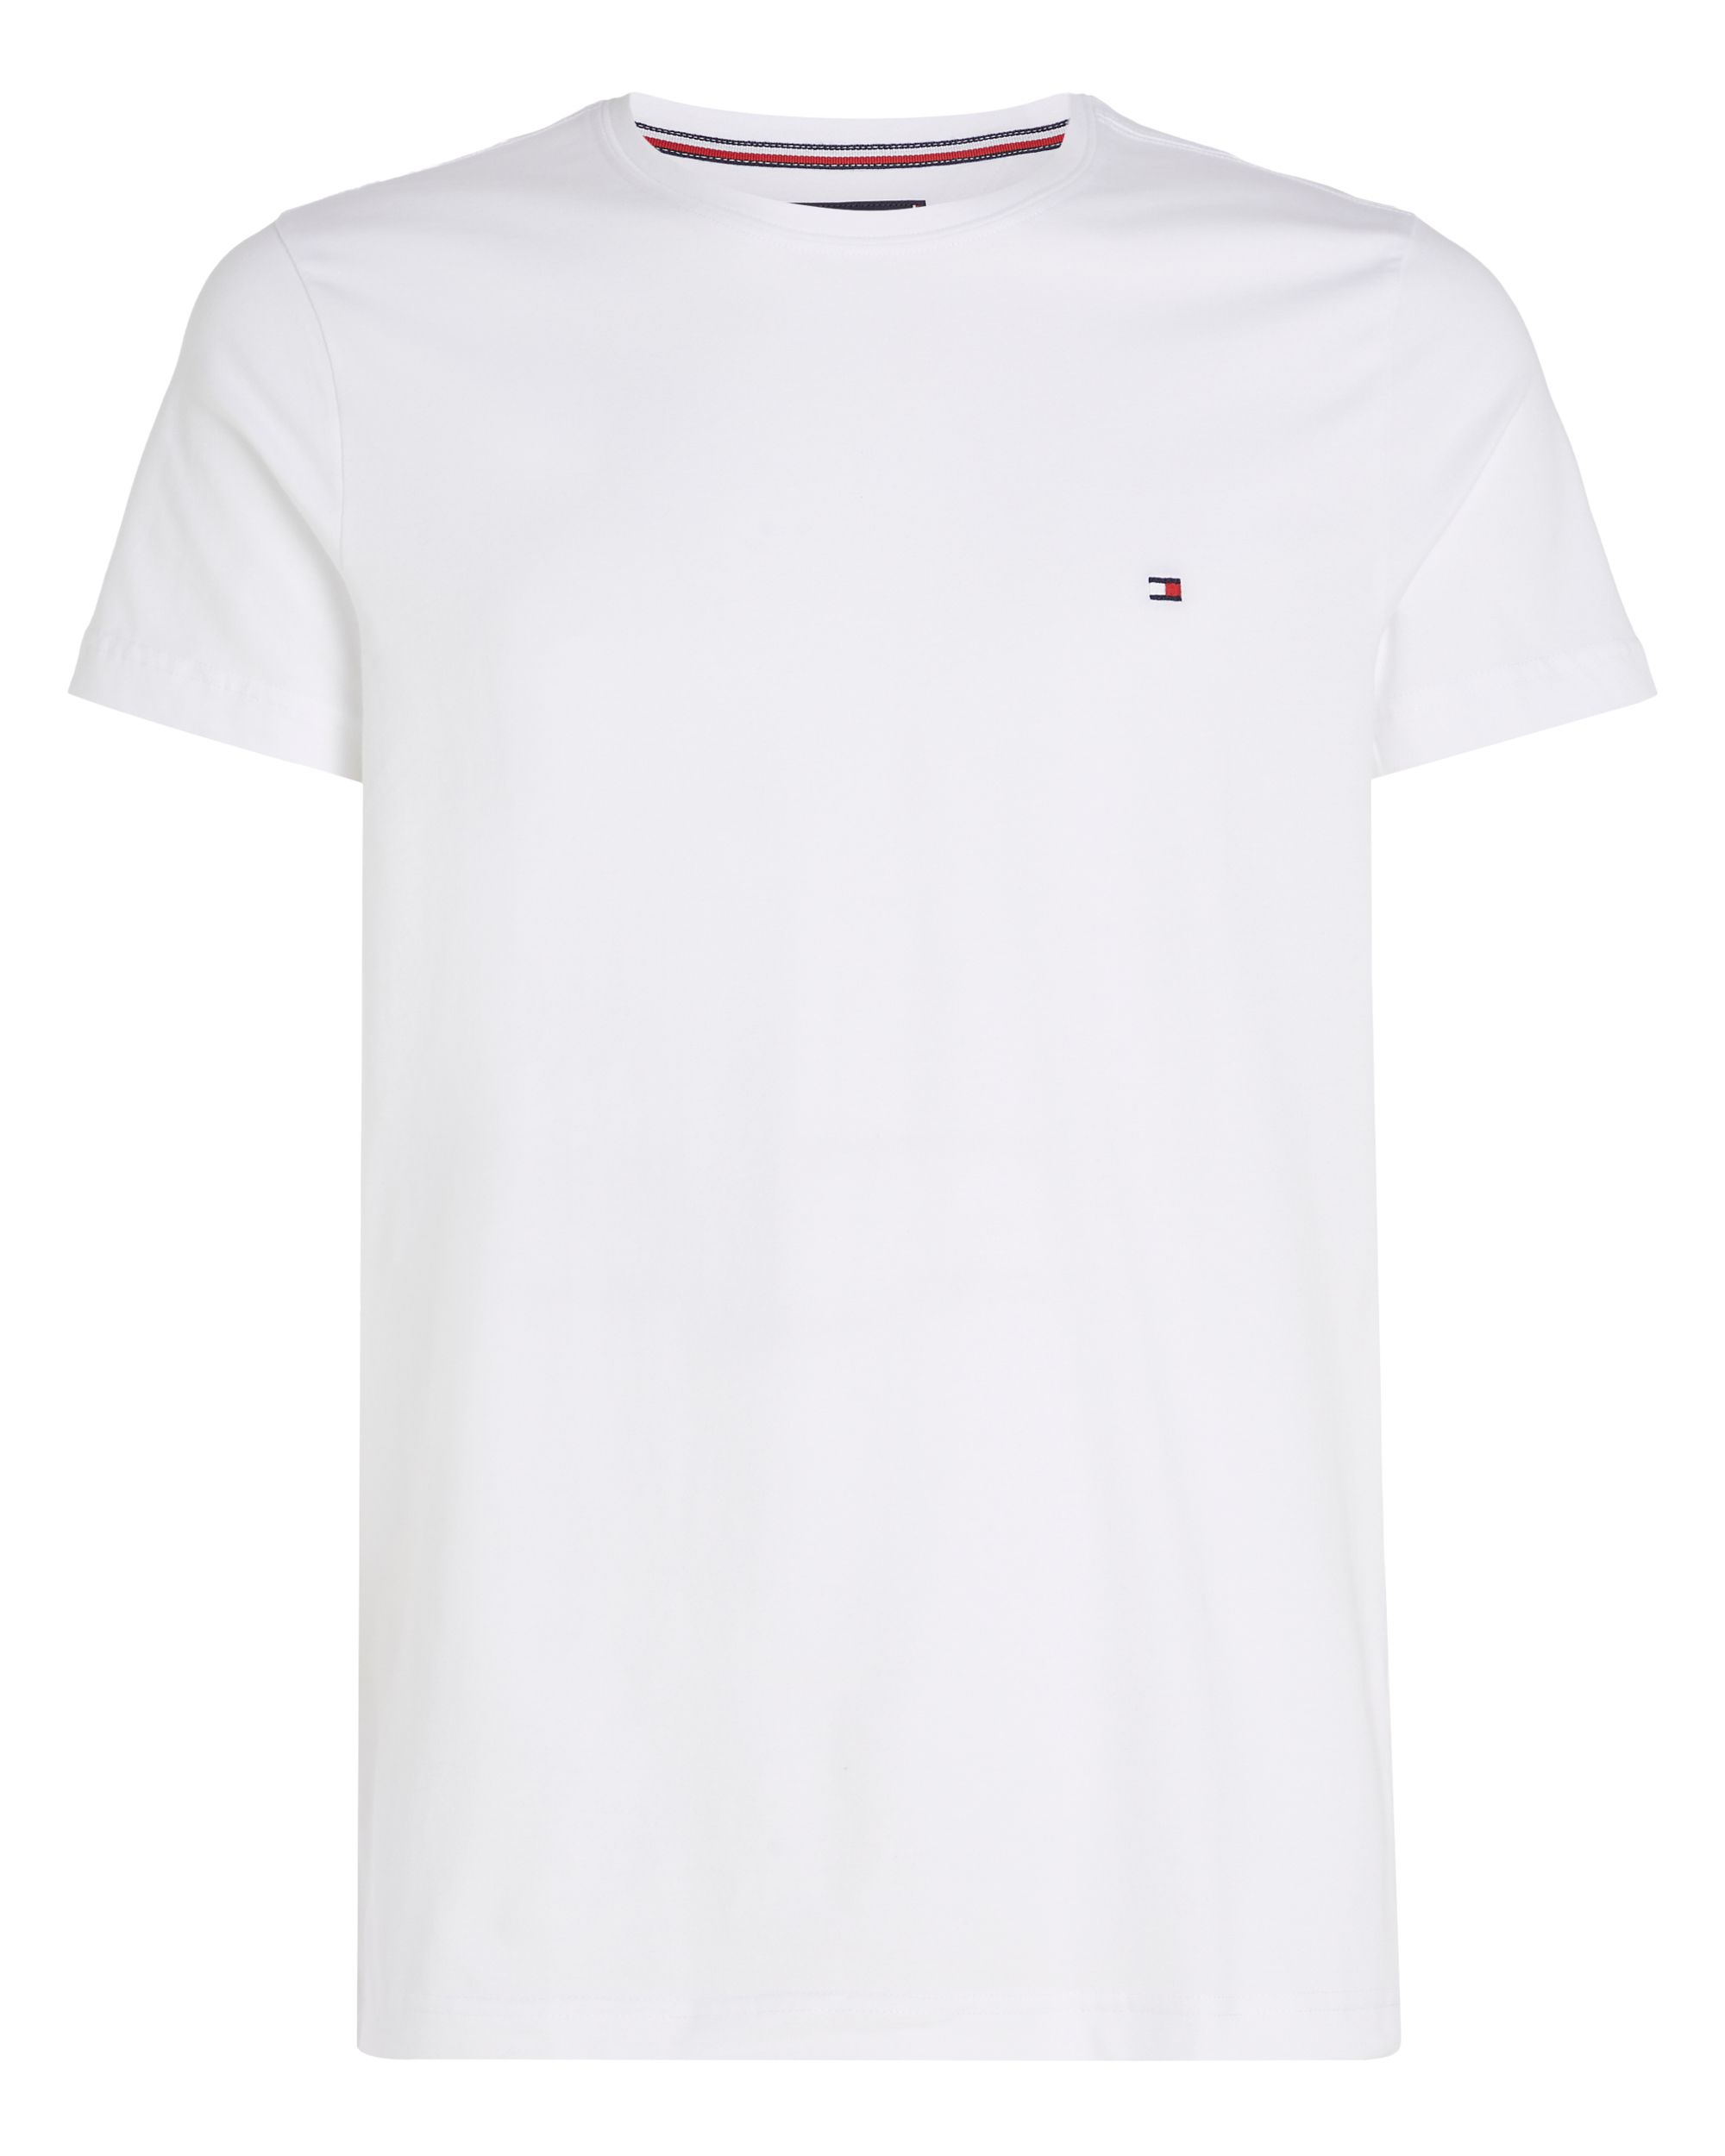 Tommy Hilfiger Menswear T-shirt KM Grijs 086994-001-L